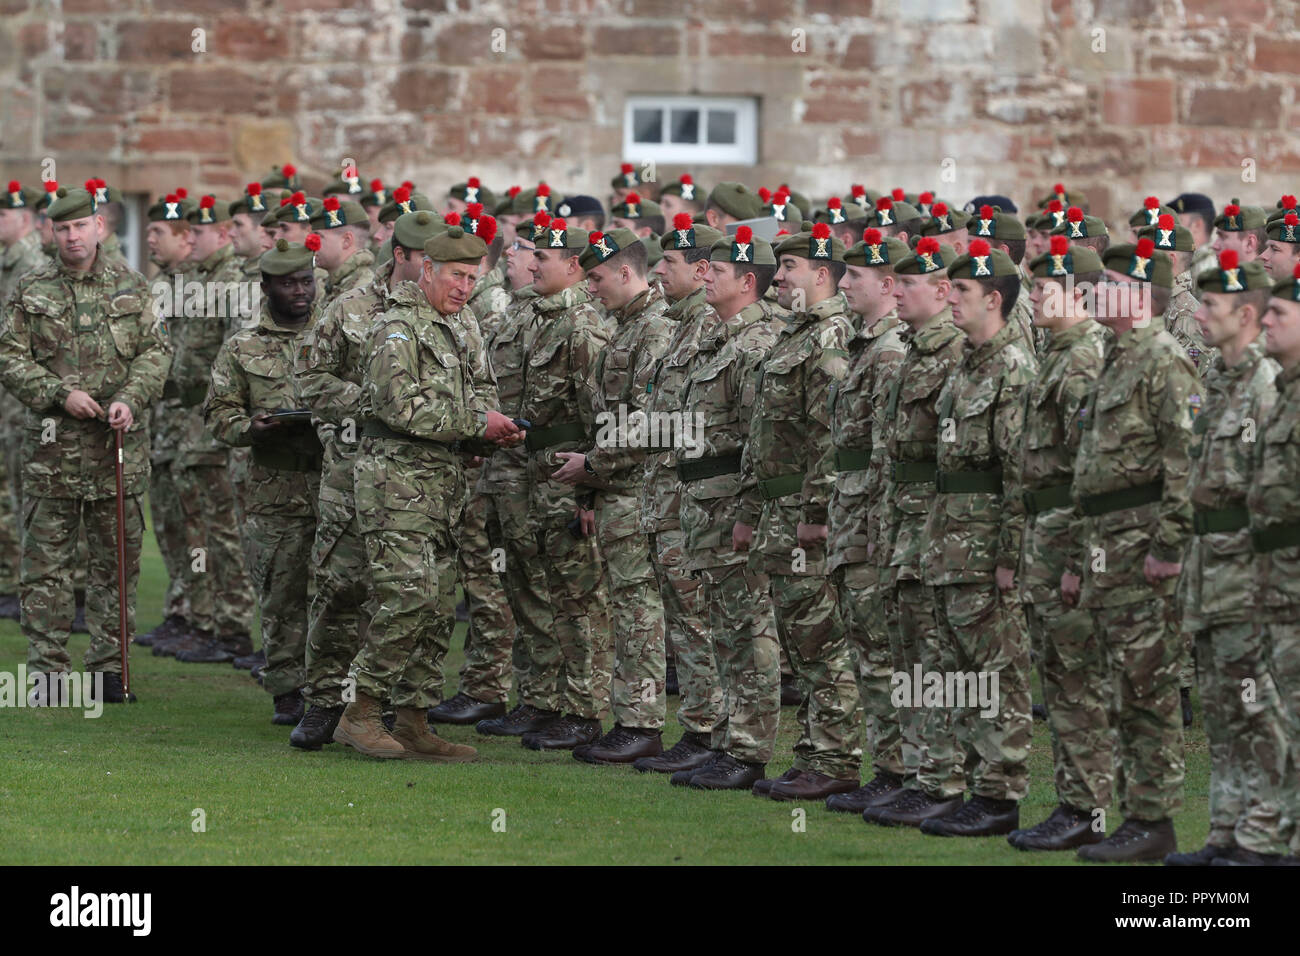 Le Prince de Galles connu comme le duc de Rothesay alors que dans l'écosse présente campagne en Irak des médailles à des soldats du Black Watch, 3e Bataillon, The Royal Regiment of Scotland (3) les troupes sylvestres au fort George, Inverness. Banque D'Images